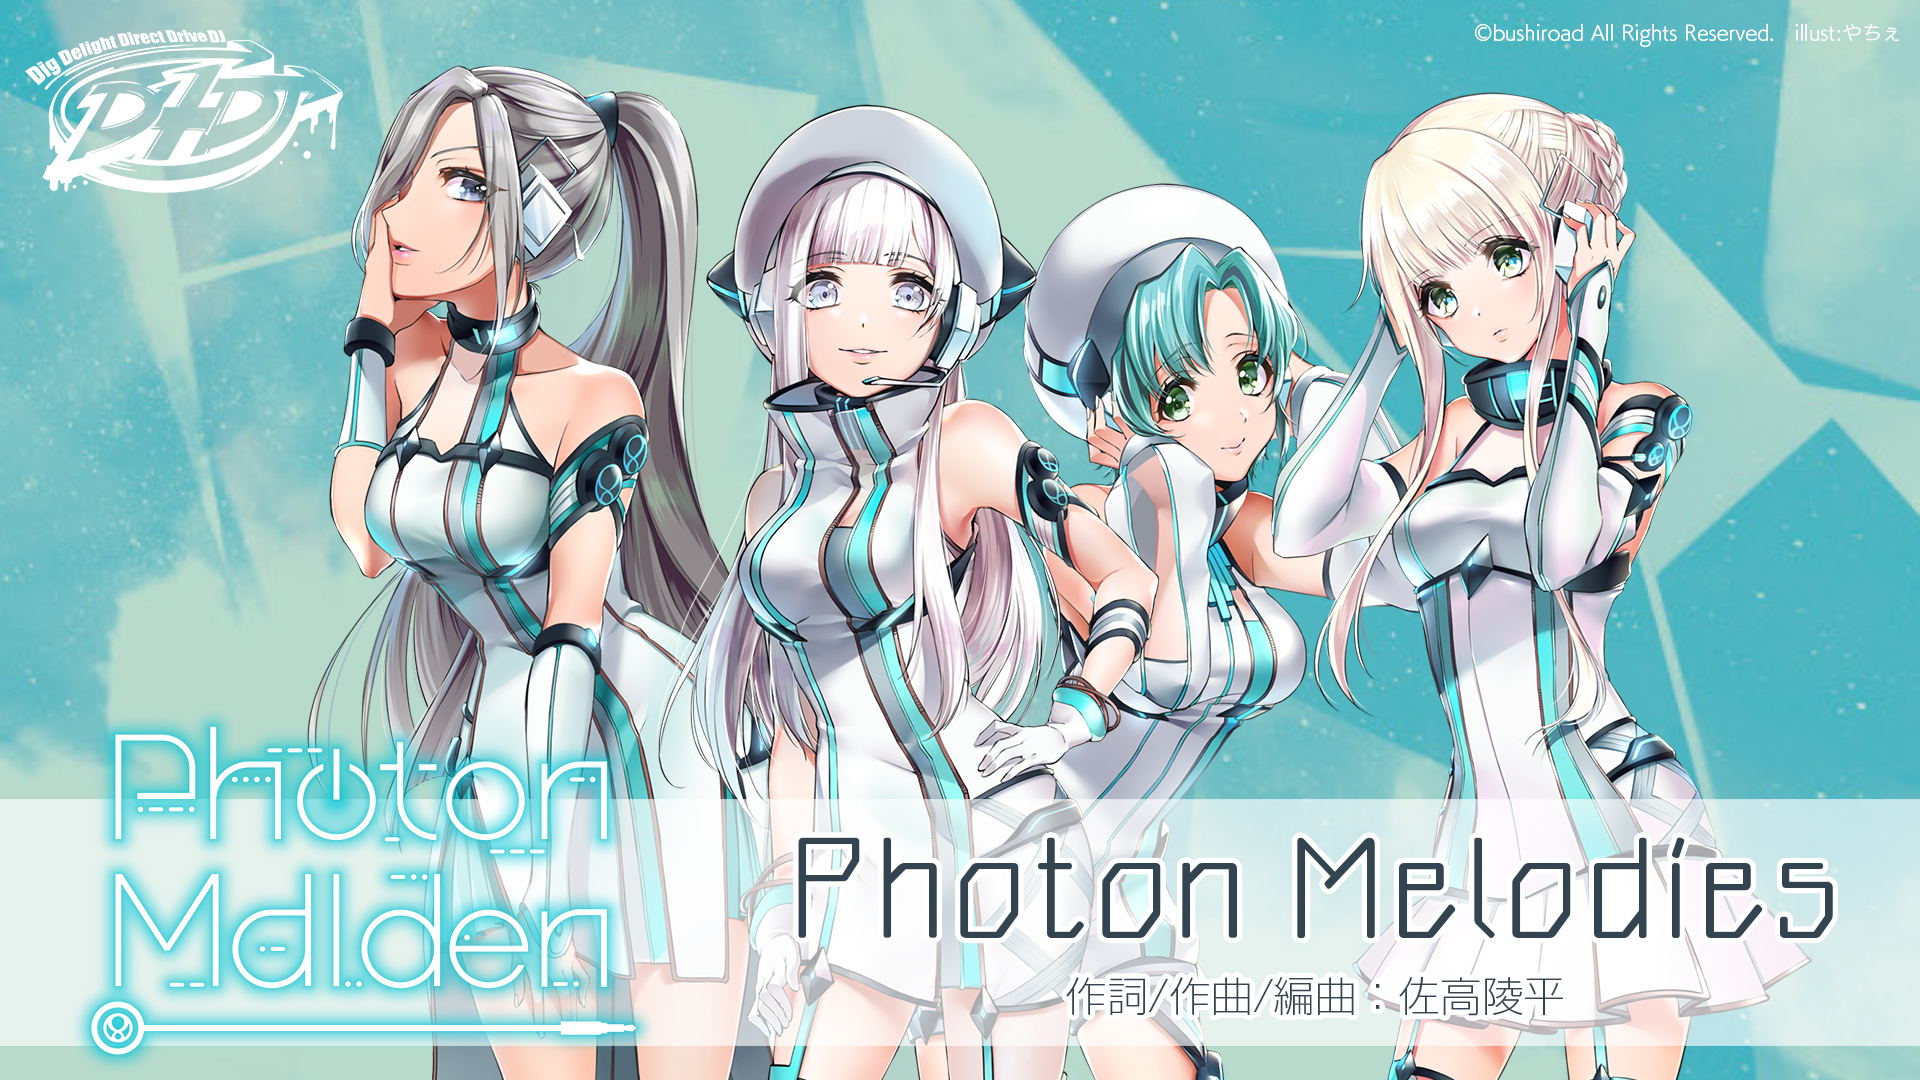 D4dj発のユニット Photon Maiden のオリジナル楽曲の試聴動画を公開 株式会社ブシロードのプレスリリース